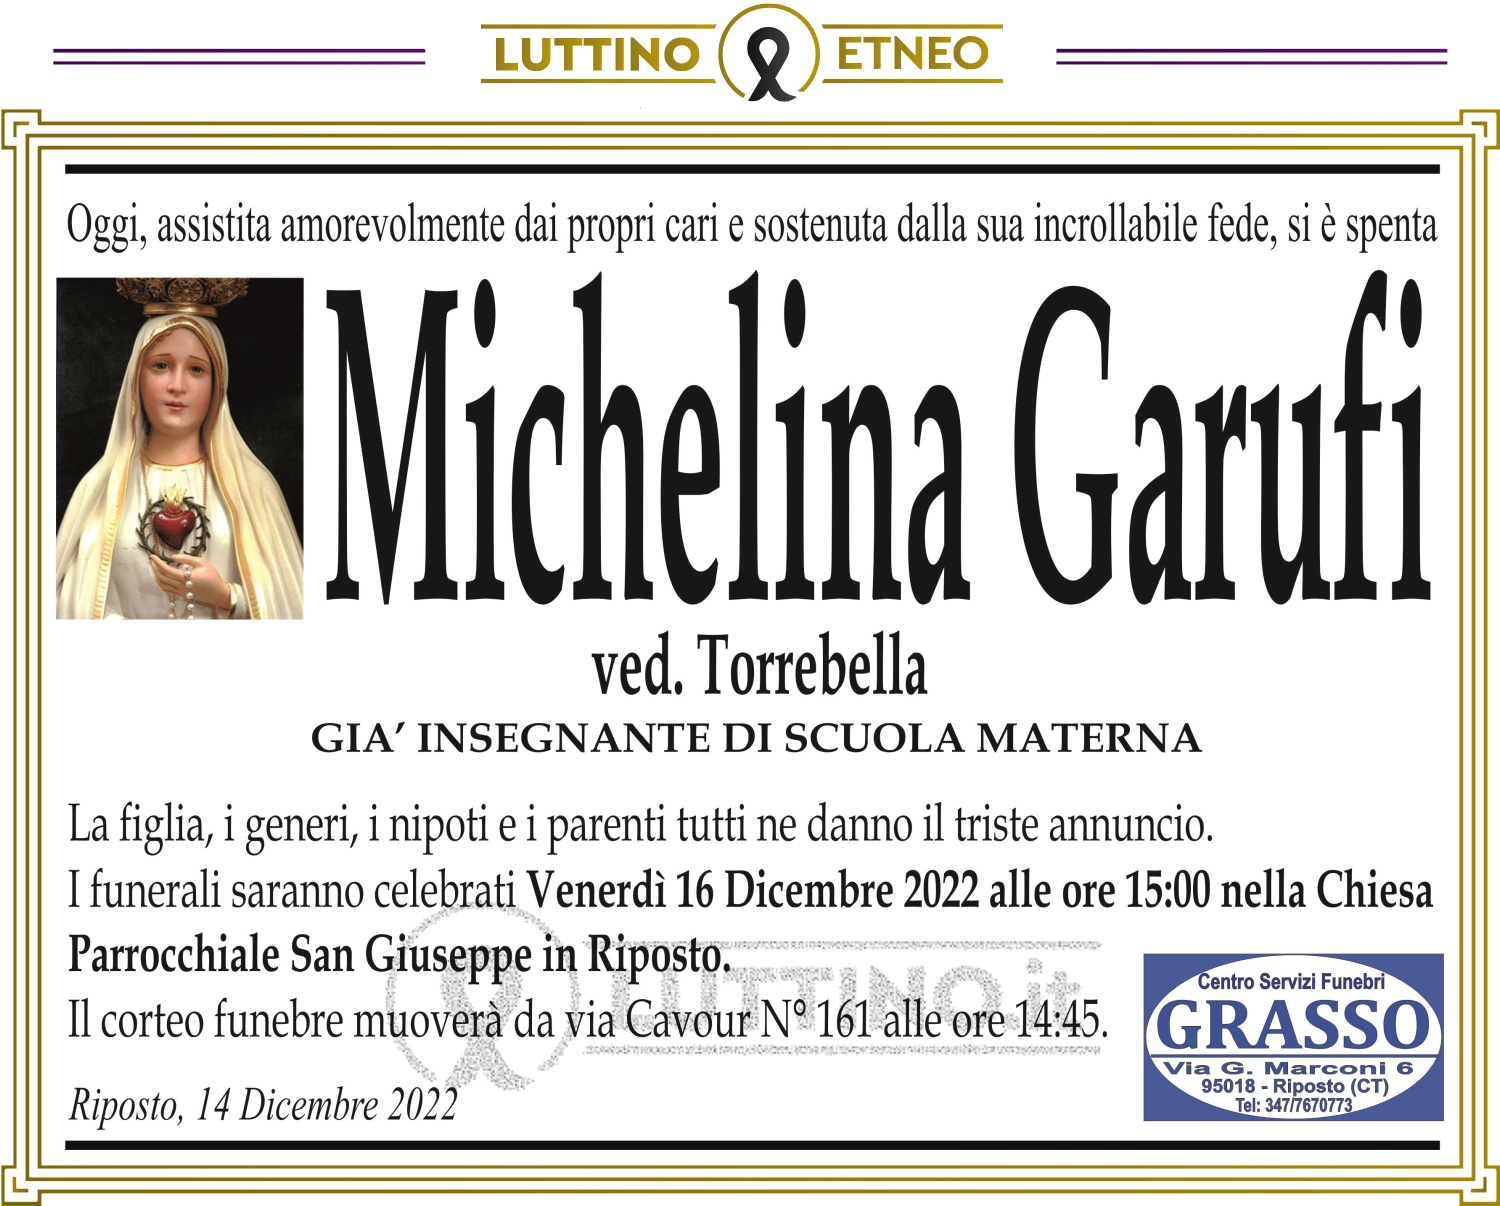 Michelina Garufi 